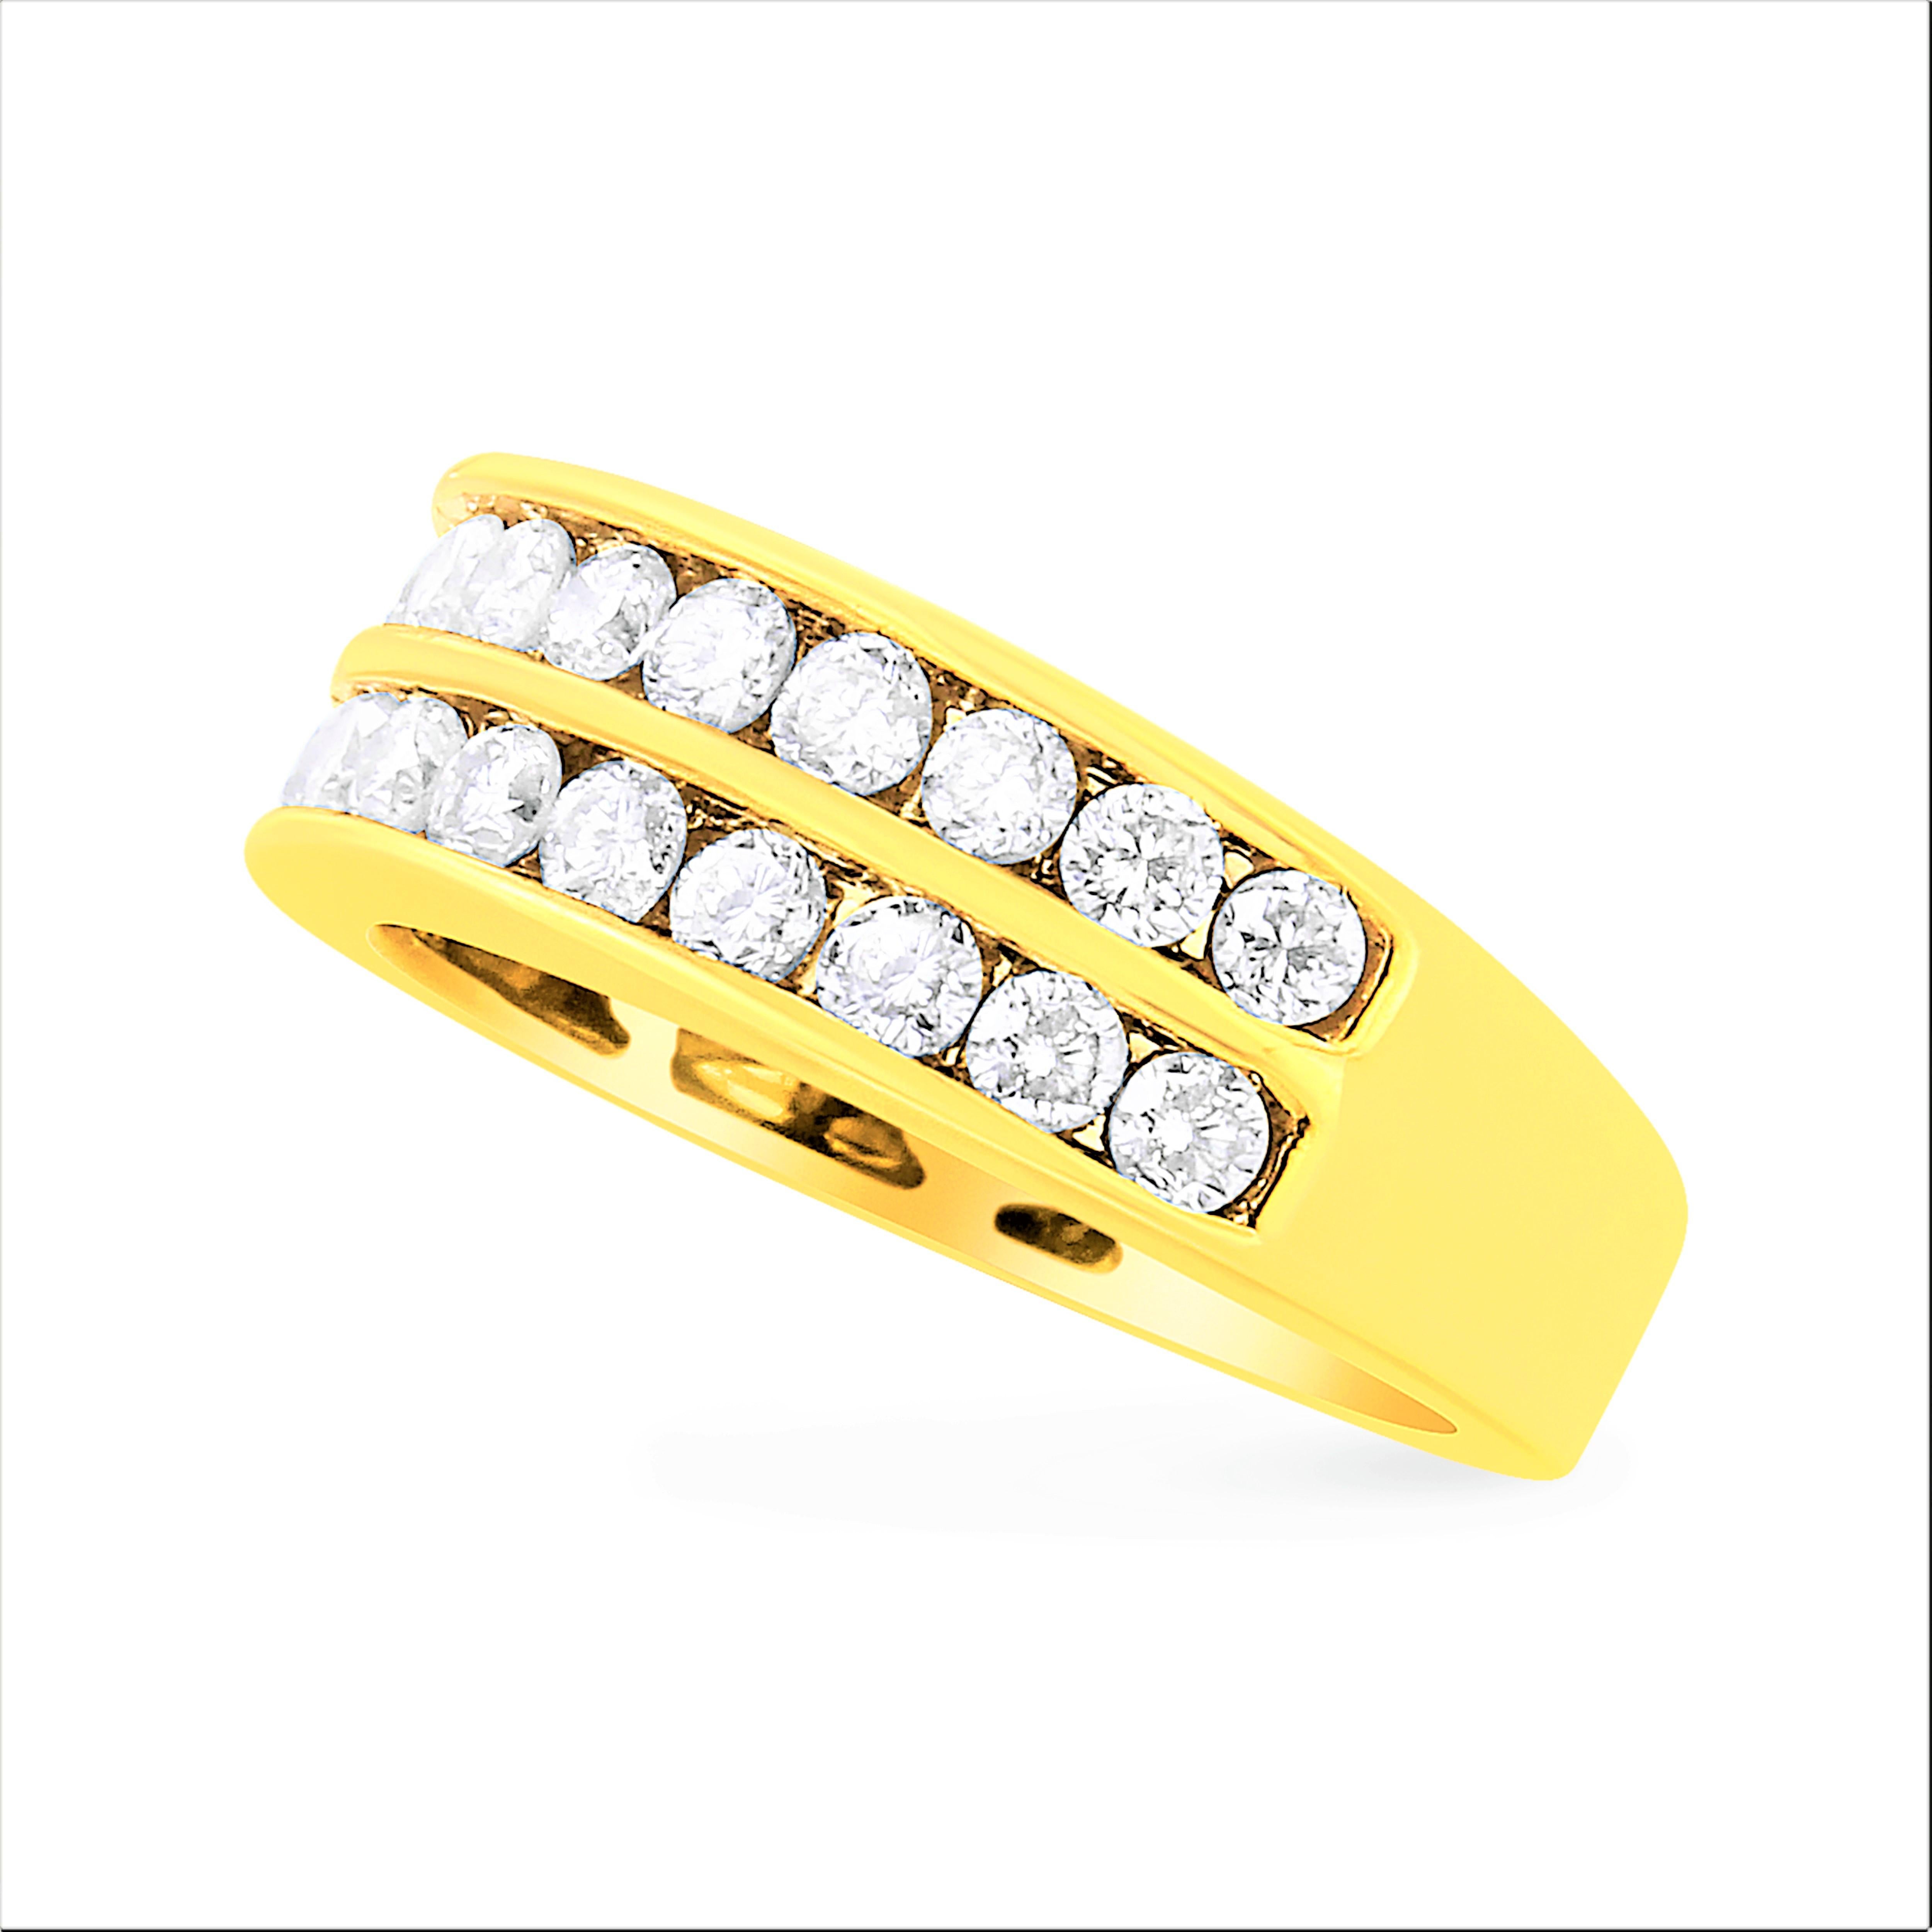 Eine doppelte Reihe glitzernder Diamanten im Rundschliff schmückt dieses wunderschöne Ringdesign. Dieser Ring aus poliertem, warmem 10-karätigem Gelbgold ist mit 22 natürlichen, funkelnden Diamanten besetzt, die in zwei Reihen angeordnet sind.